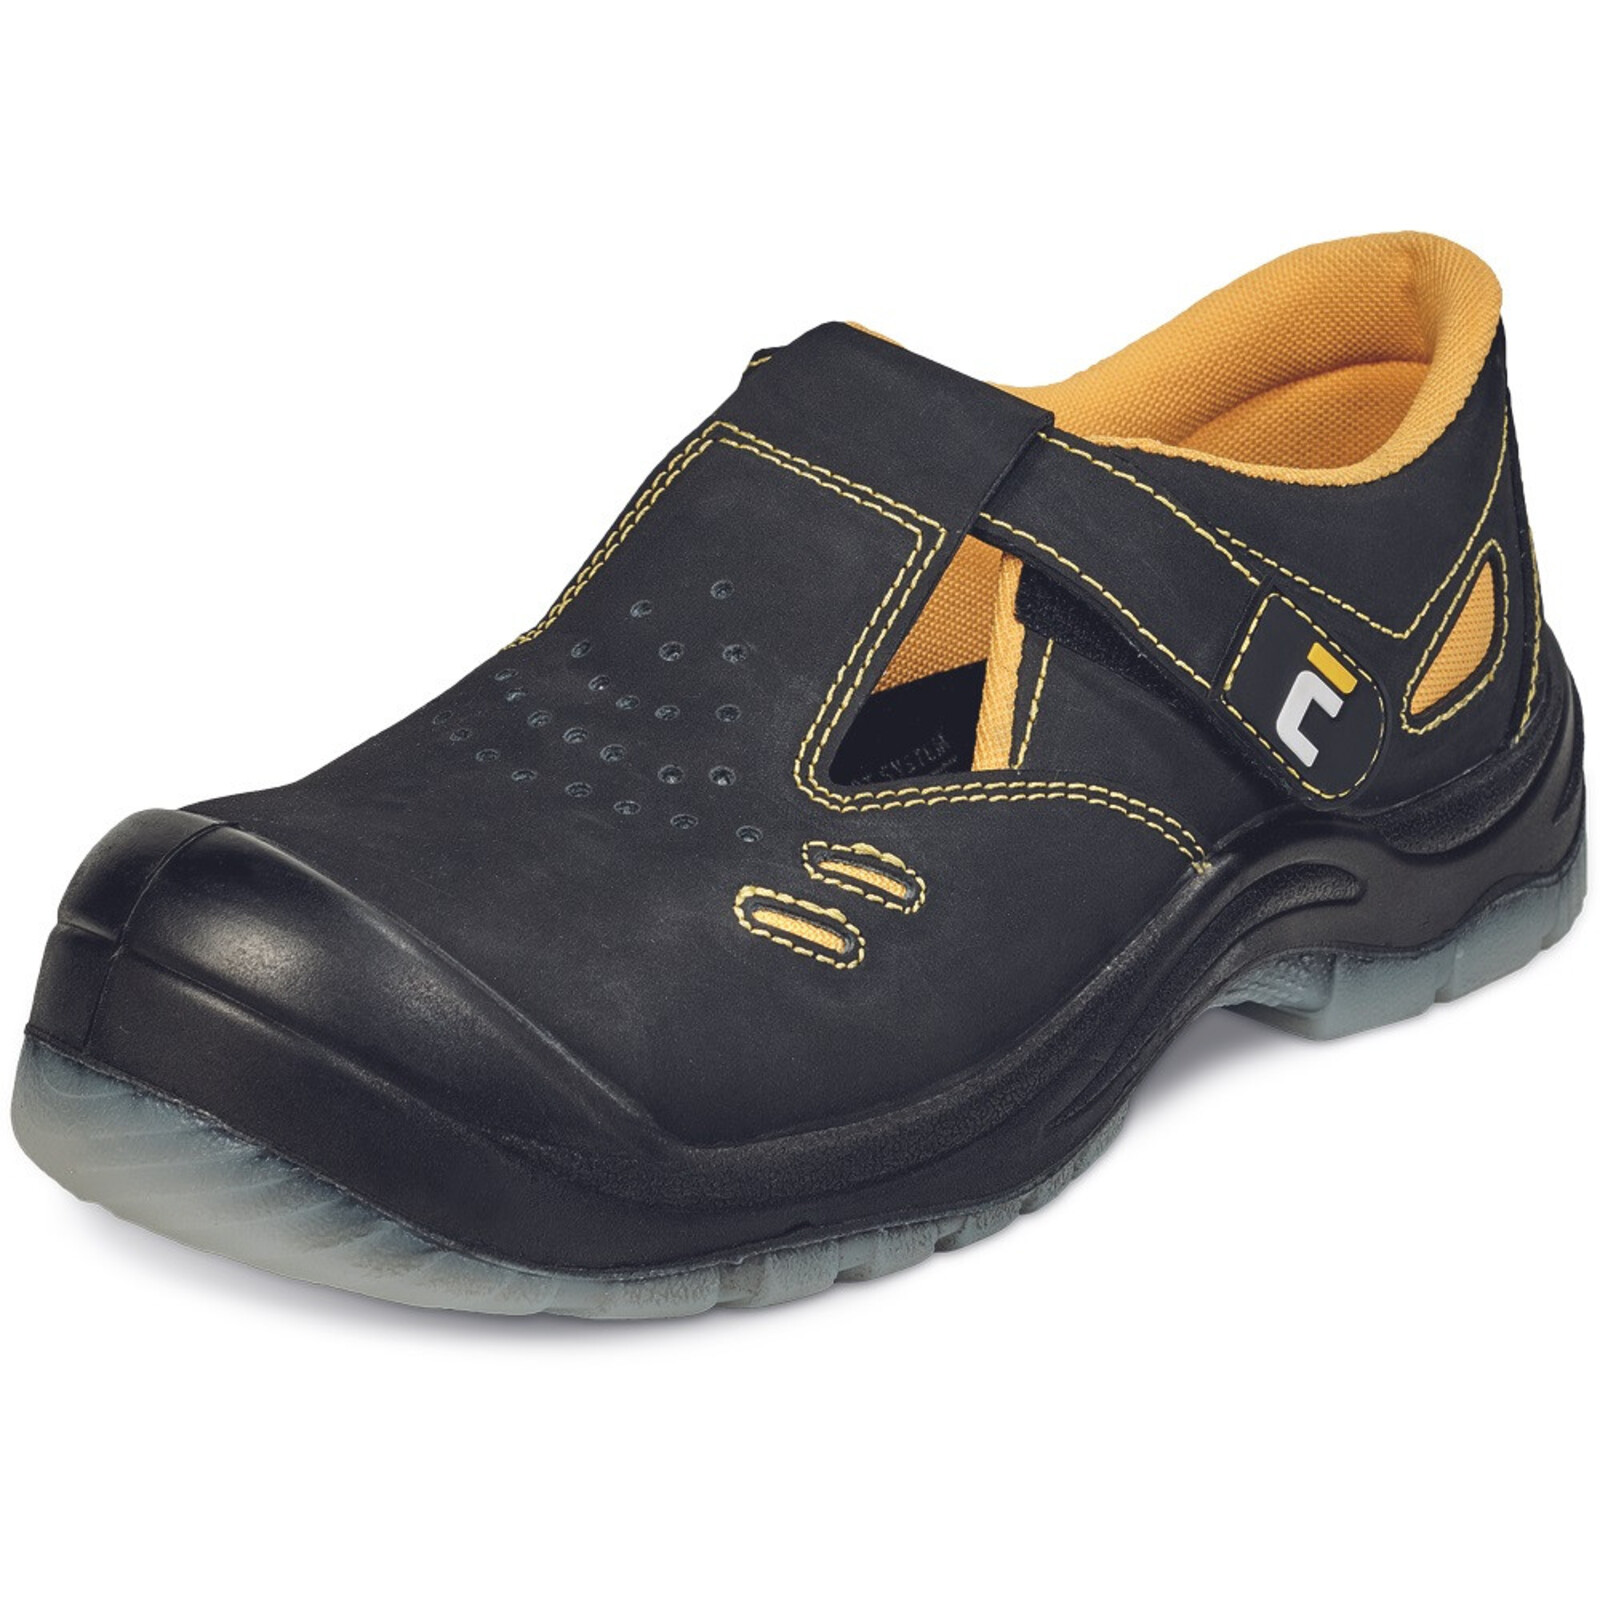 Bezpečnostné sandále Cerva BK TPU MF S1P SRC - veľkosť: 42, farba: čierna/žltá